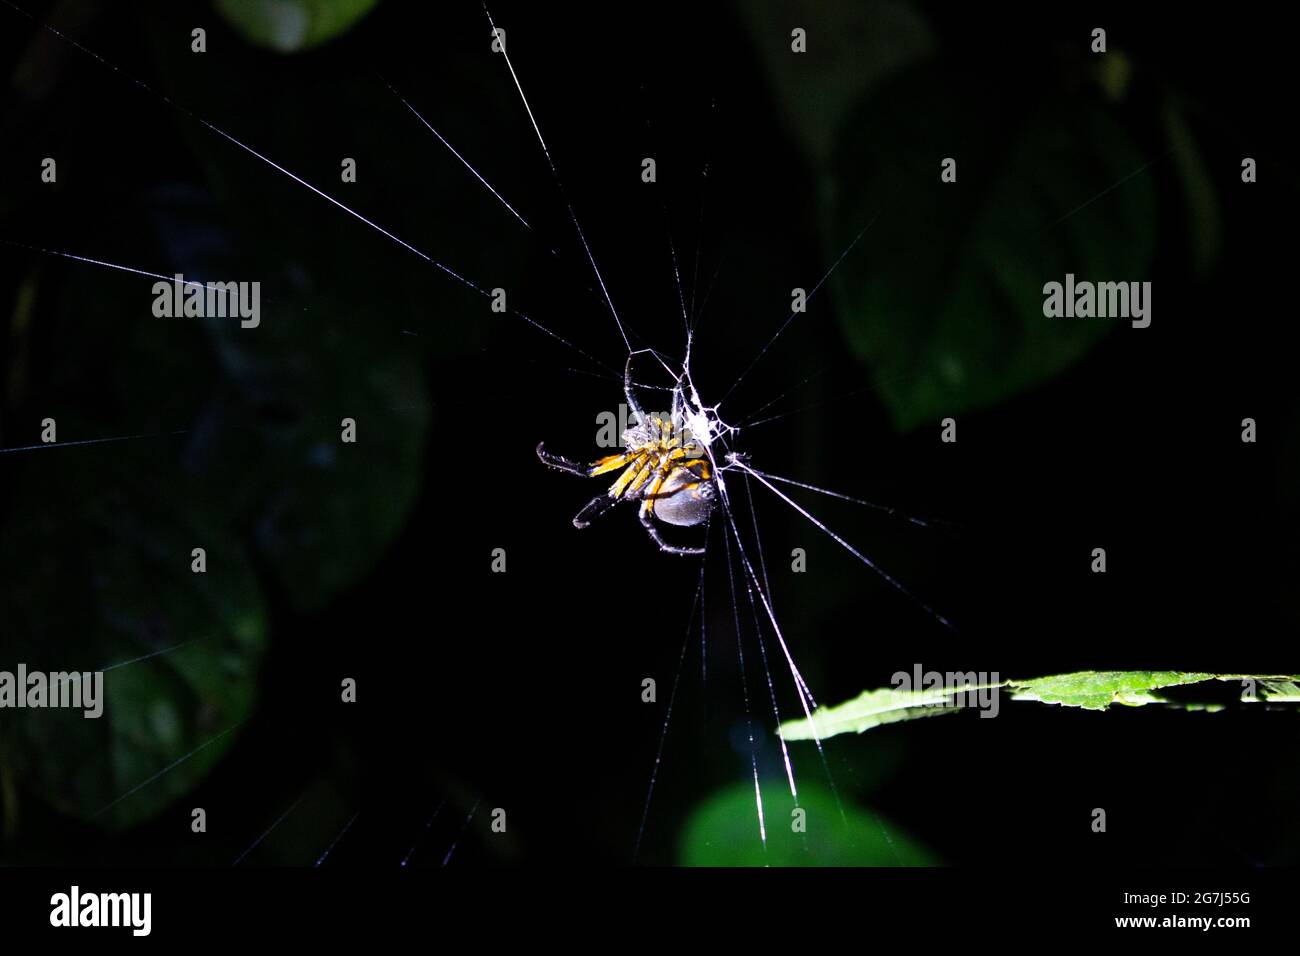 Eine Spinne auf einem Netz, die bei einer Nachtwanderung in einem costaricanischen Dschungel mit Blättern im Hintergrund gefunden wurde Stockfoto